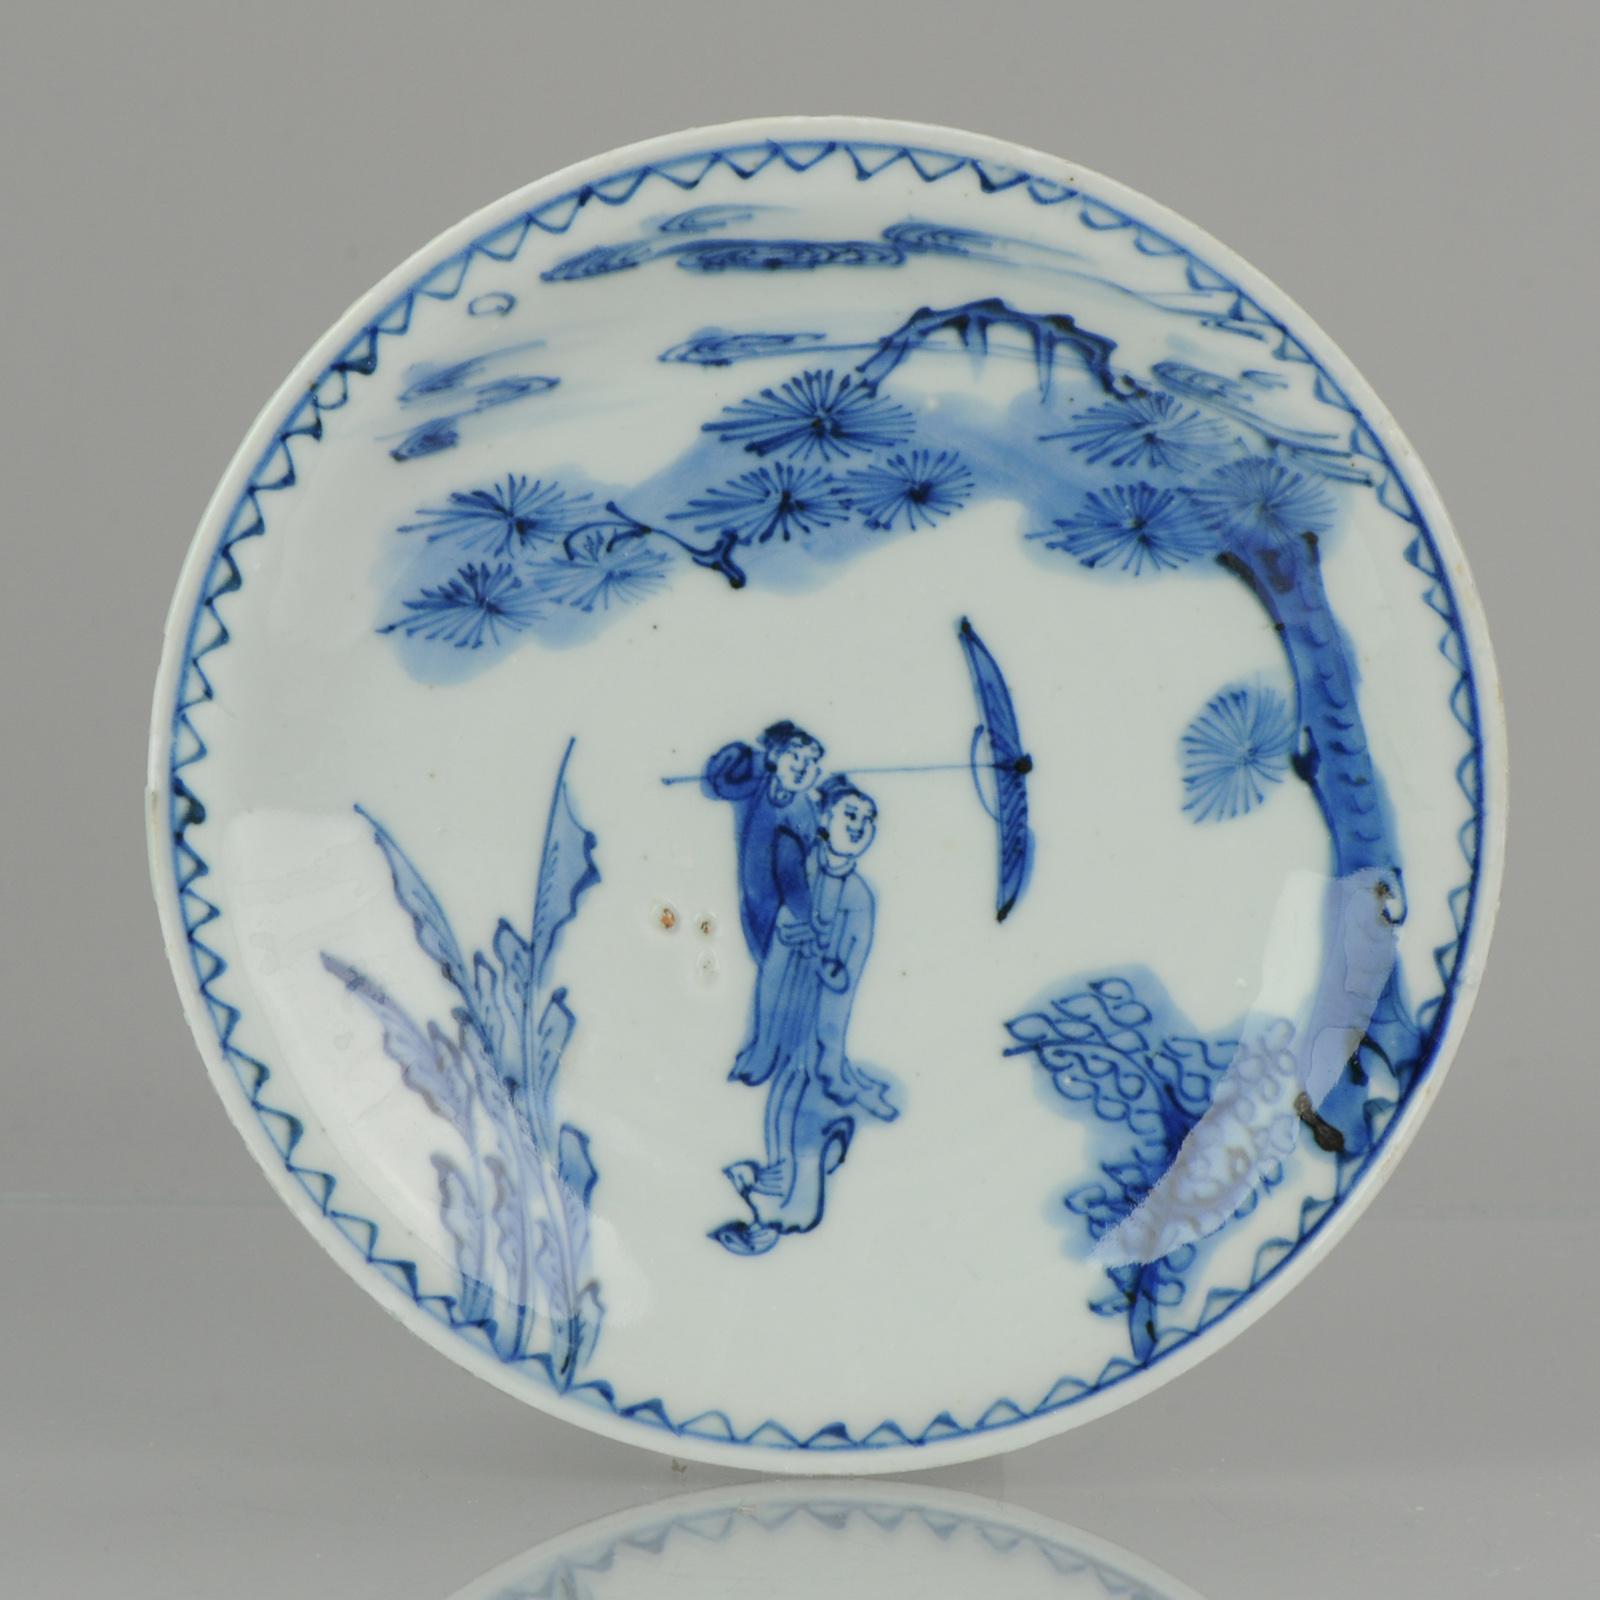 ancient china plates